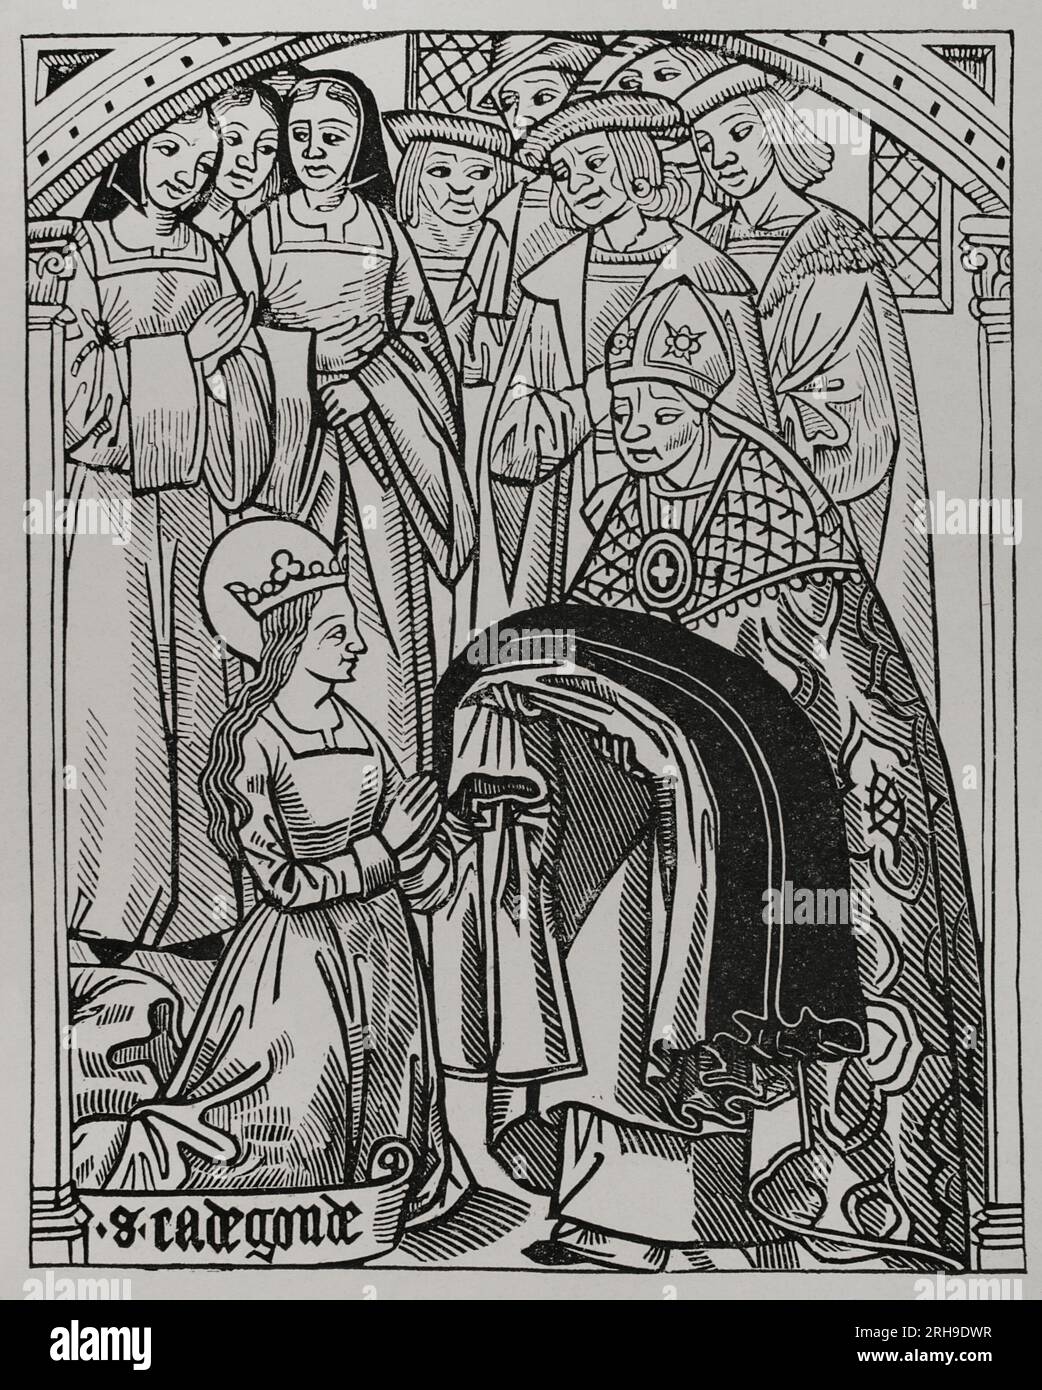 Saint Radegund (ca. 520-587). Principessa di Turingia e regina dei Franchi dal suo matrimonio con Clothar i (498-561). Radegund ricevette l'abitudine e fu consacrata una deaconess da Medard (456-545), vescovo di Noyon, quando lasciò suo marito re Clothar per entrare nella vita religiosa. Facsimile dopo un'incisione da "The History and Chronicle of Clotaire", 1513. "Vie Militaire et Religieuse au Moyen Age et à l'Epoque de la Renaissance". Parigi, 1877. Foto Stock